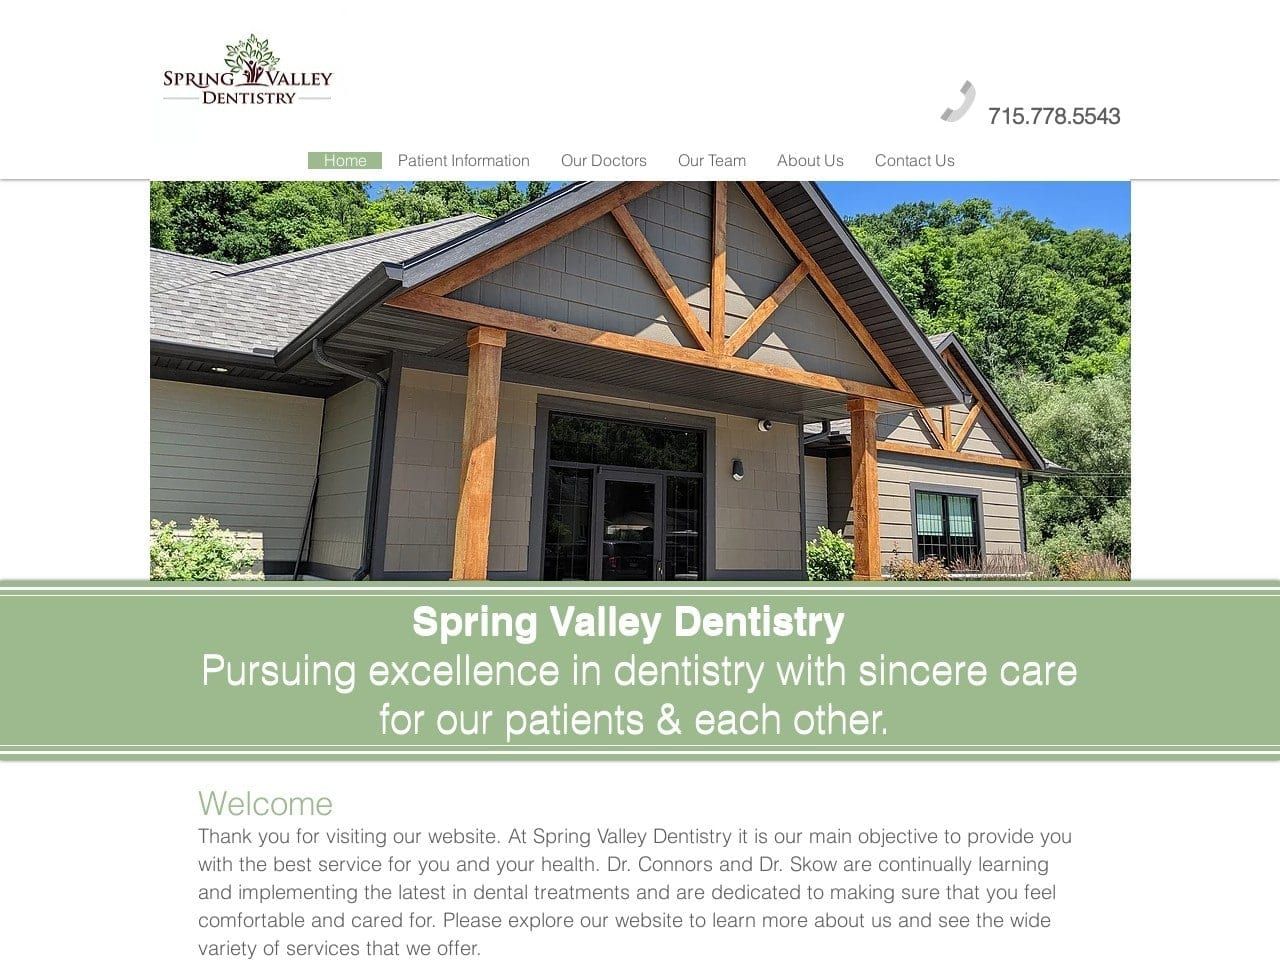 Spring Valley Dental Website Screenshot from svdentistry.com